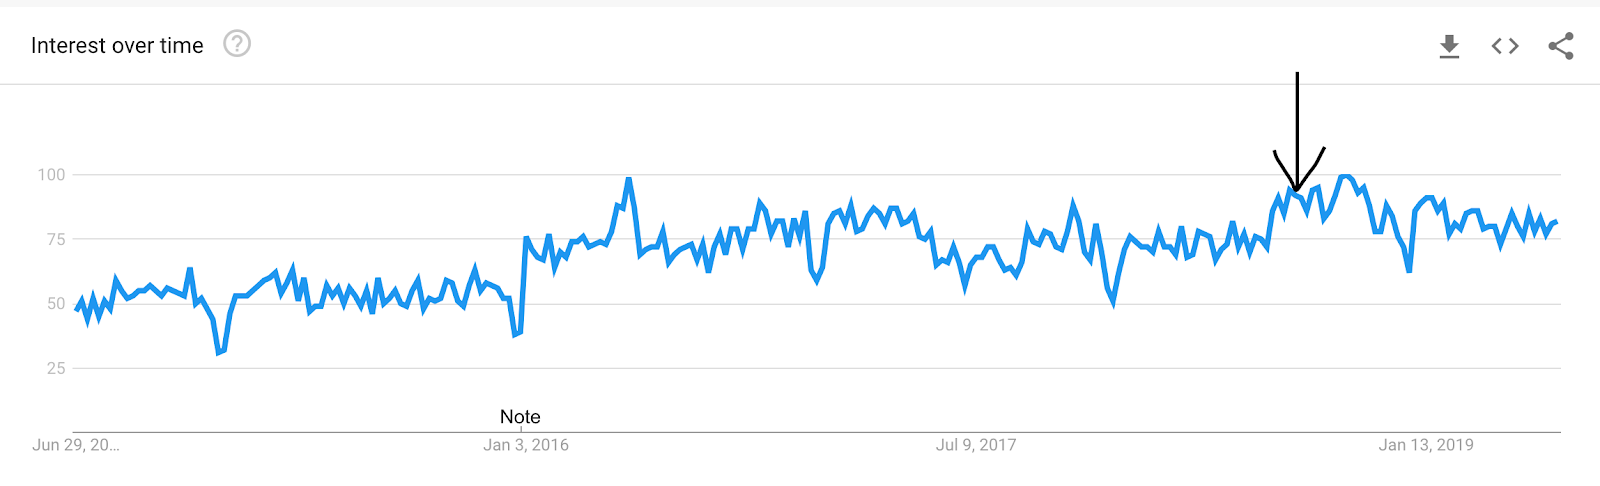 grafico delle tendenze di google per interesse nel video marketing.